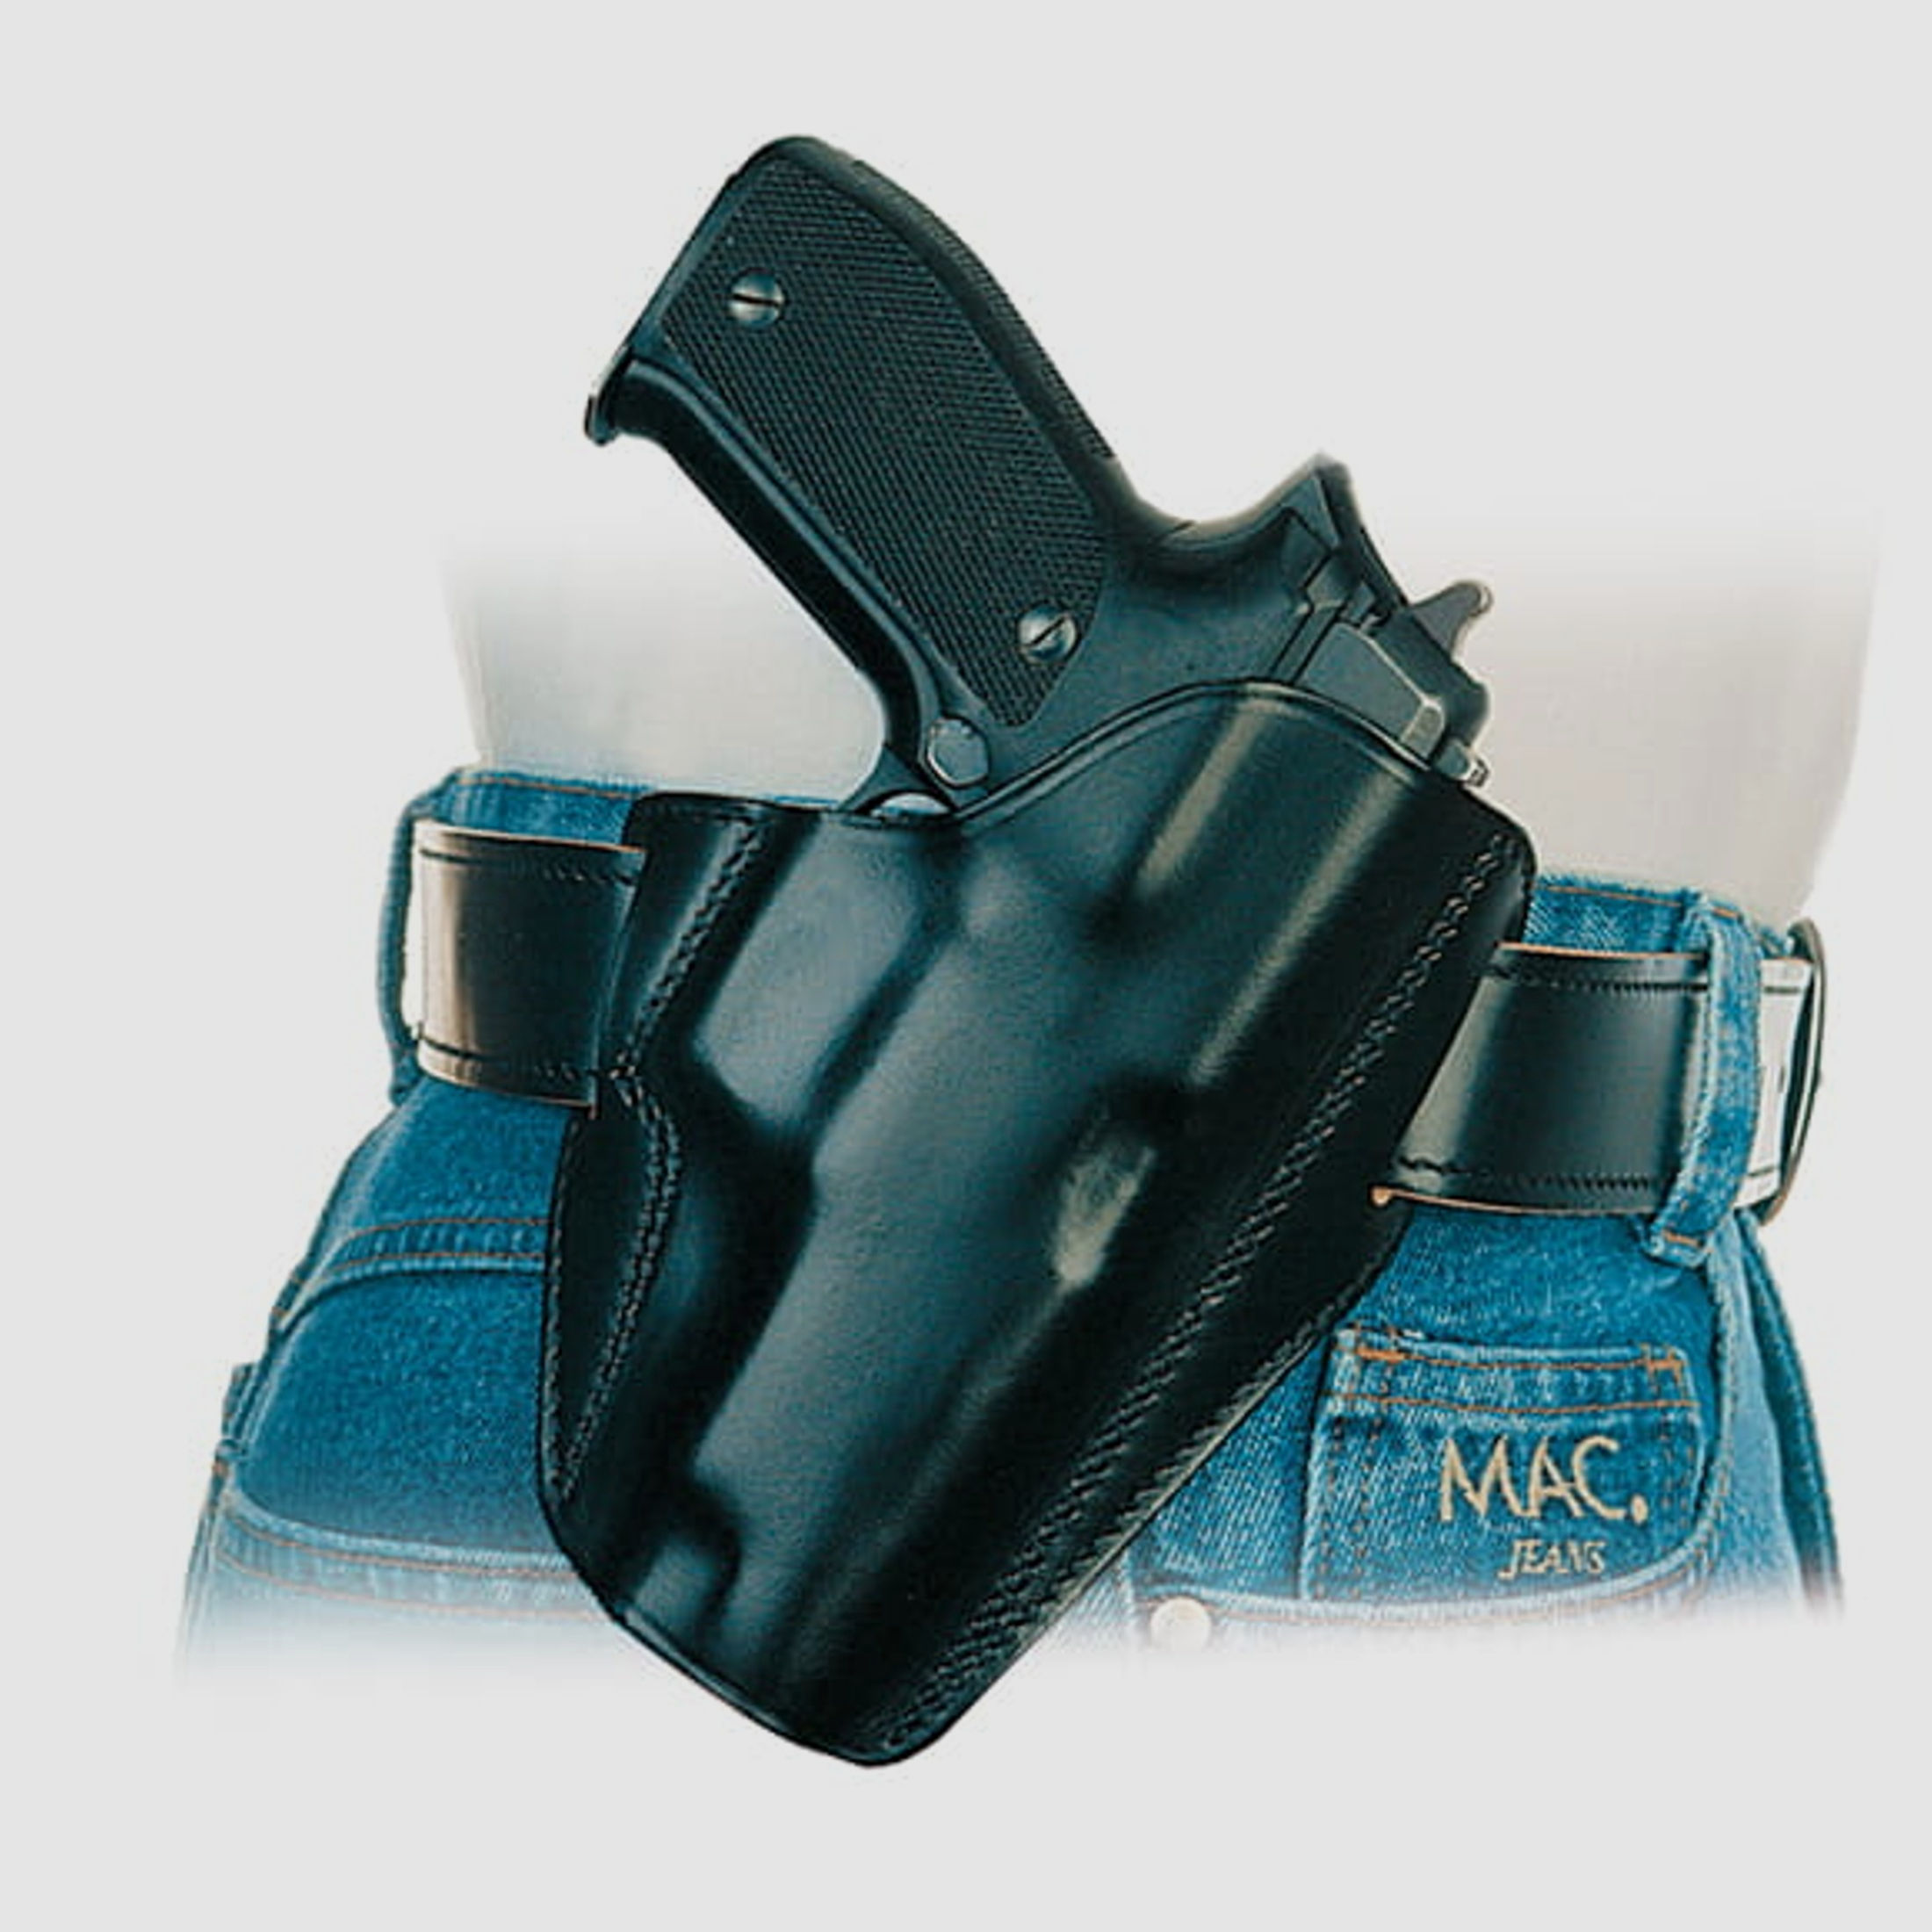 SICKINGER Holster (Leder) f. Glock 29/30 63429 -FBI Lightning braun